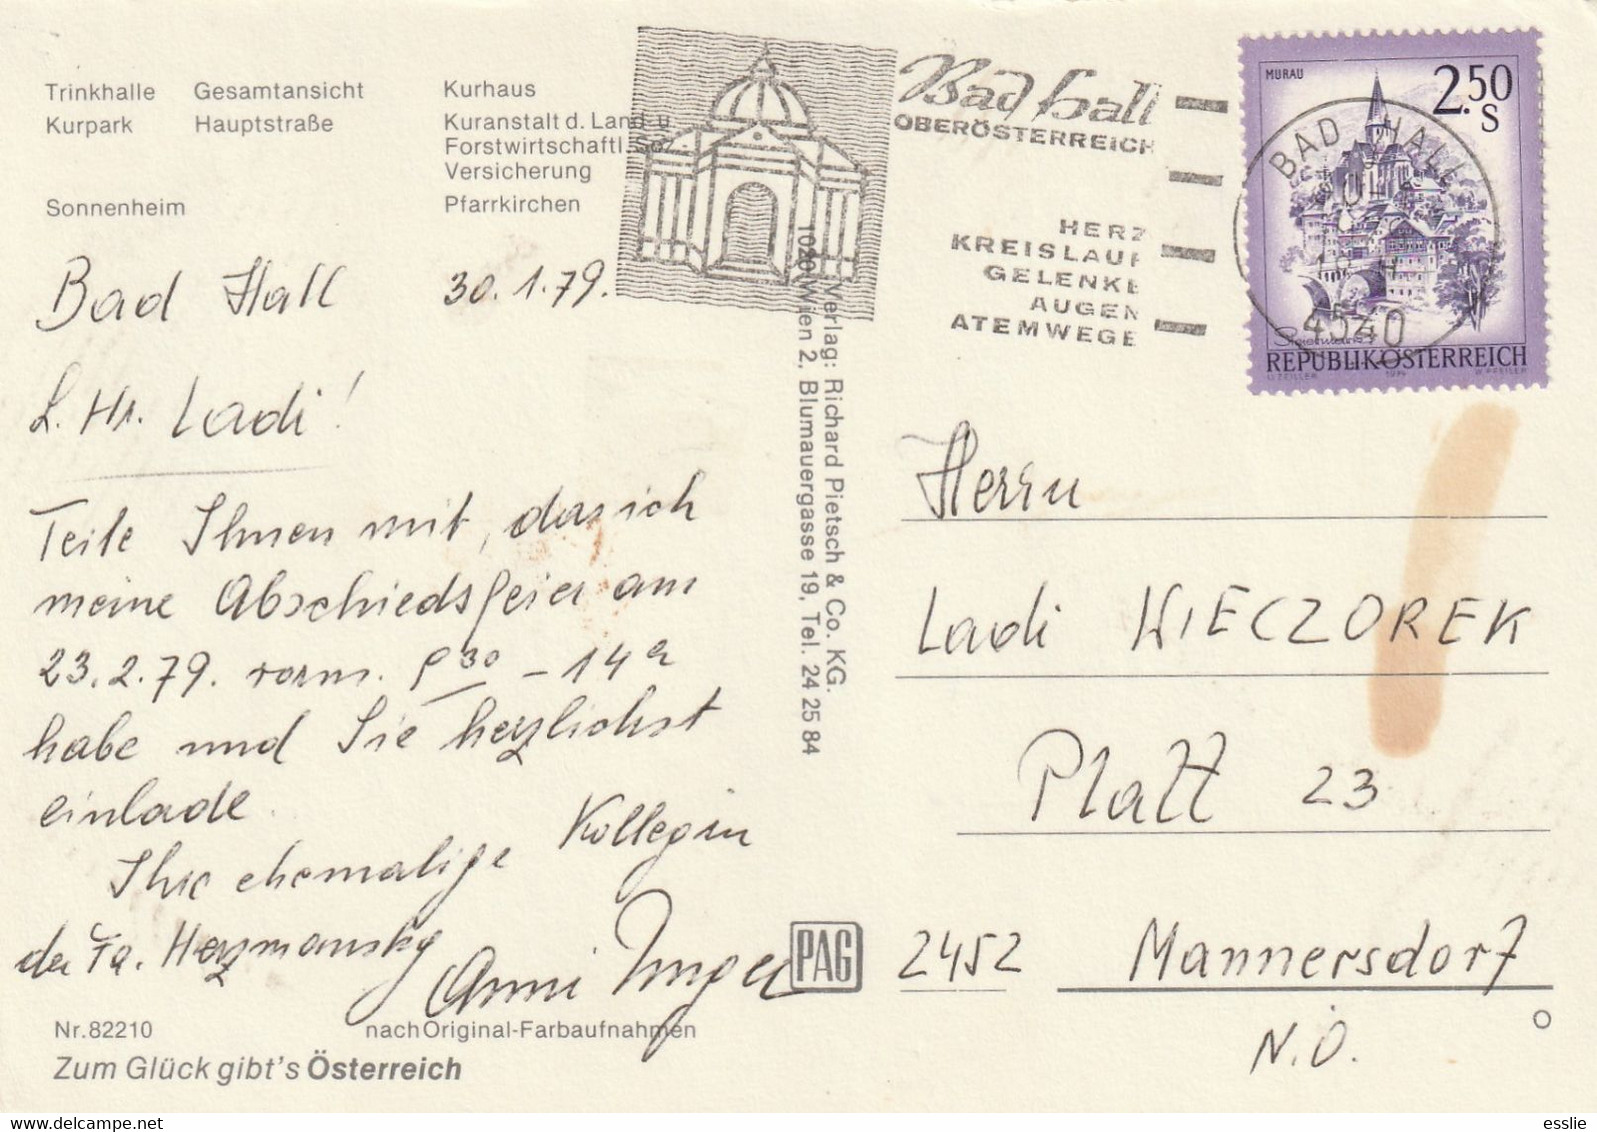 Austria Weltkurort Bad Hall Oberosterreich - Postcard Post Card - 1979 - Bad Hall